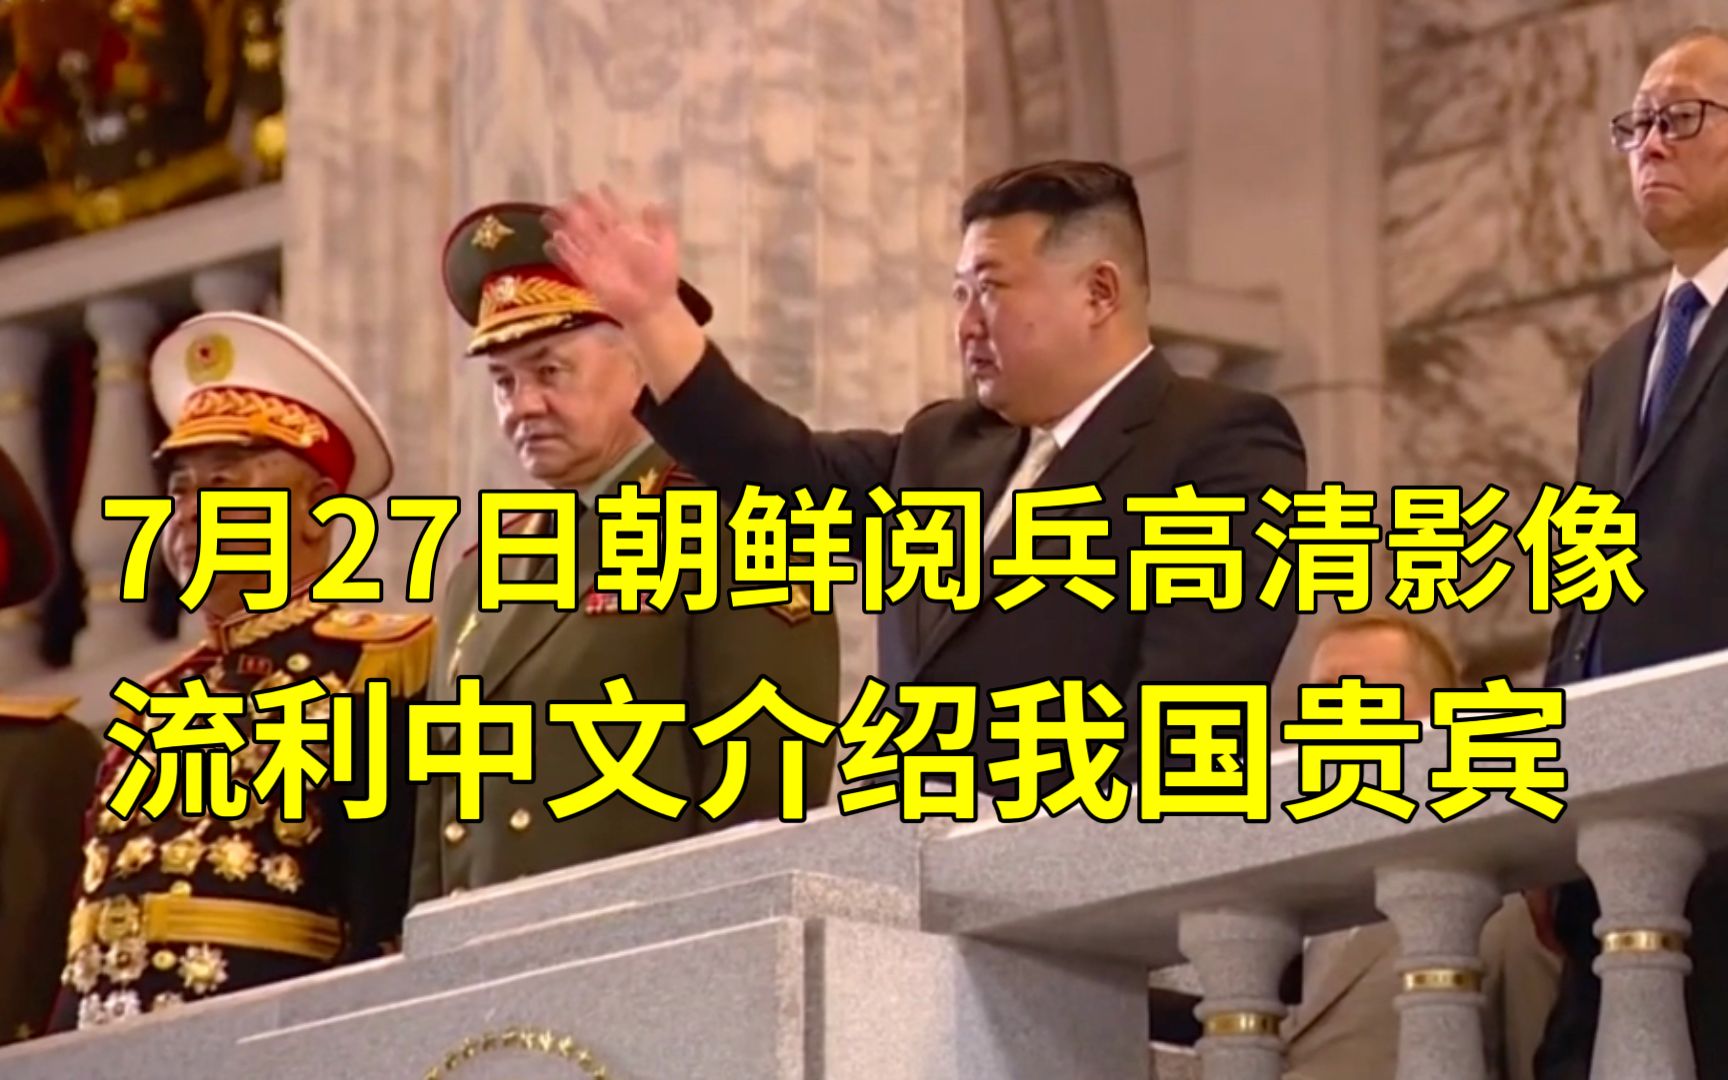 7月27朝鲜阅兵，高清影响。流利中文介绍中国贵宾。